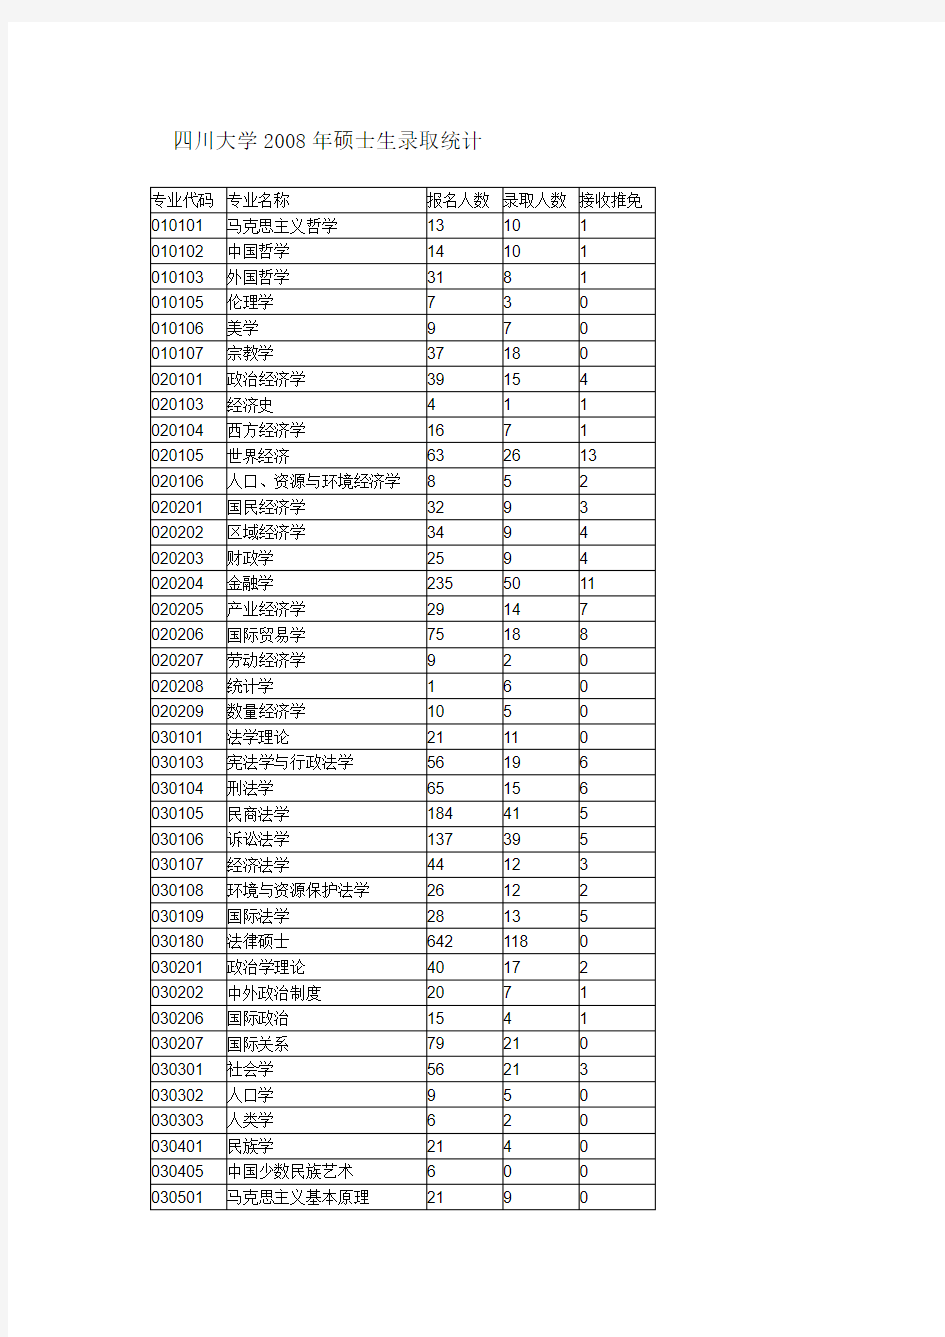 四川大学研究生历年录取人数和分数